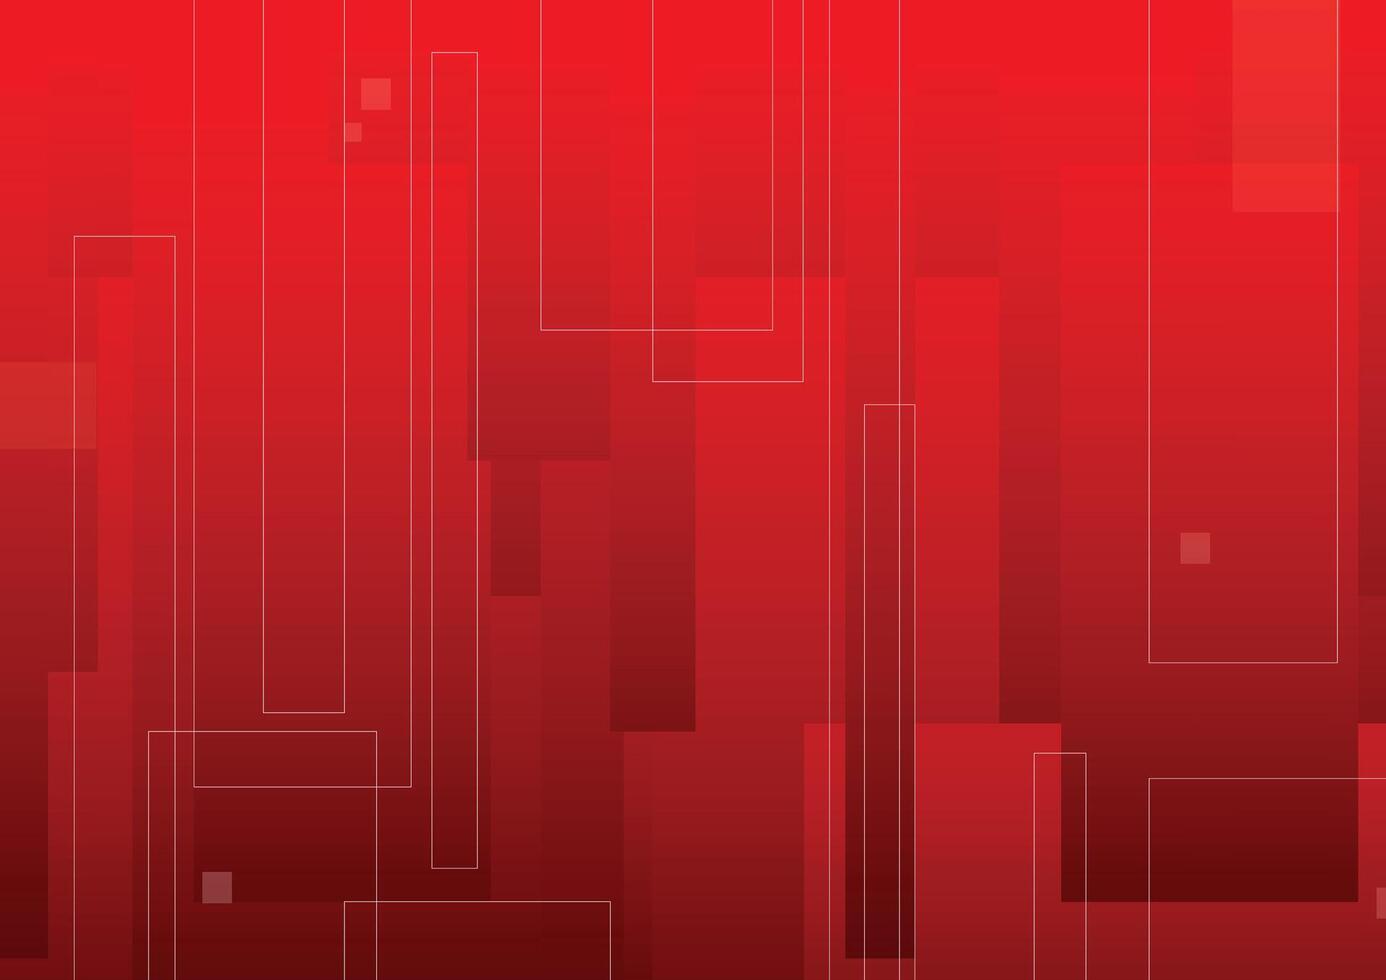 abstrakt röd geometrisk bakgrund, broschyr, social media, vektor illustration